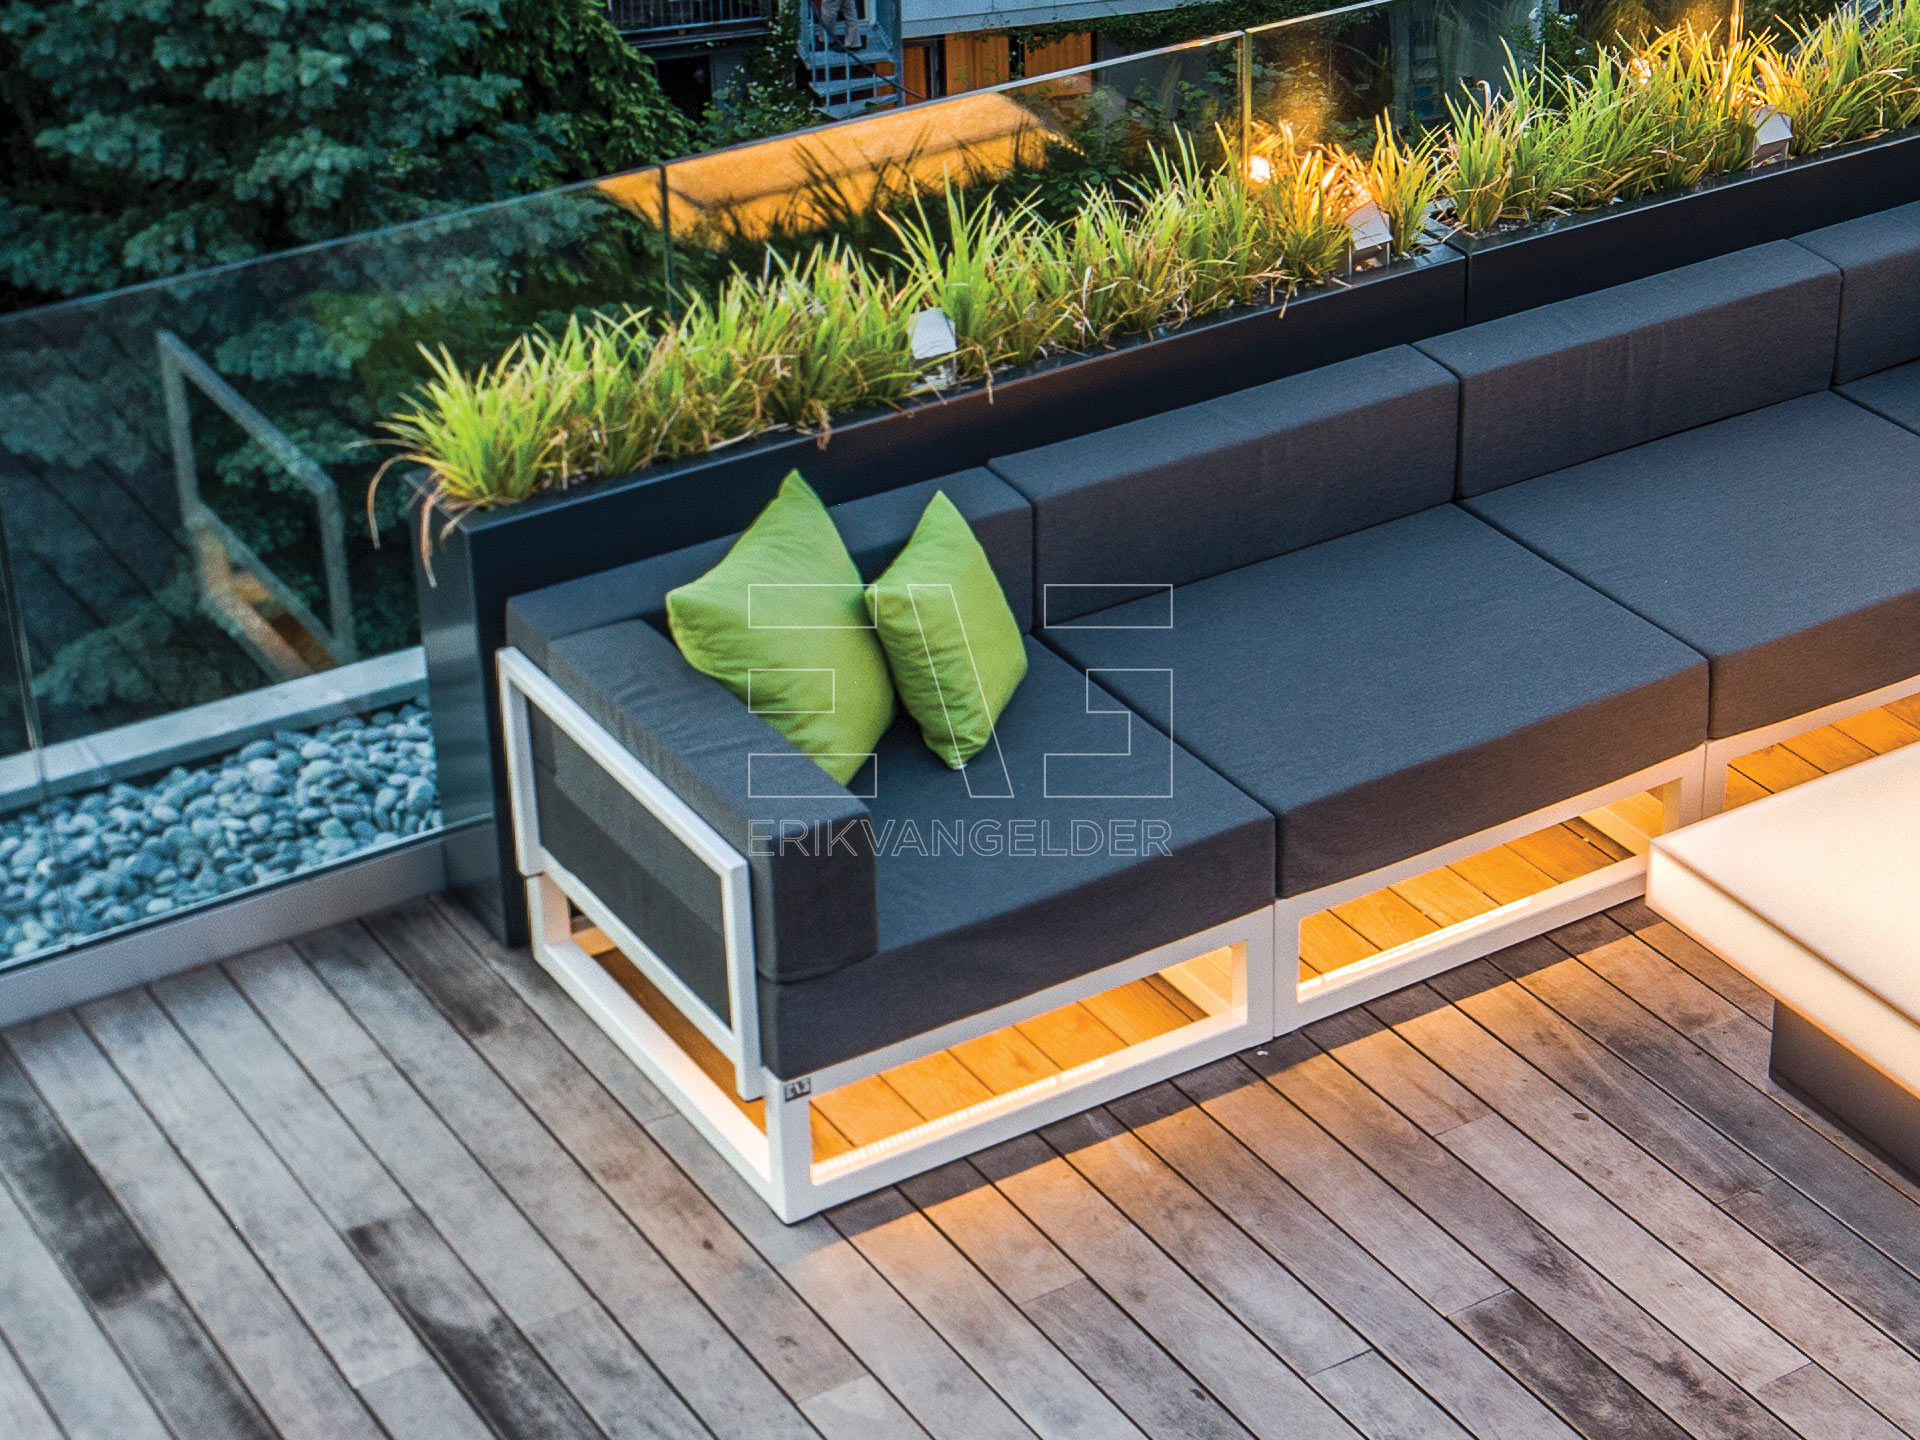 Luxe design lounge wit grijs dakteras daktuin roof garden high end luxury erikvangelder tuinarchitect tuindesign exclusive sfeervol